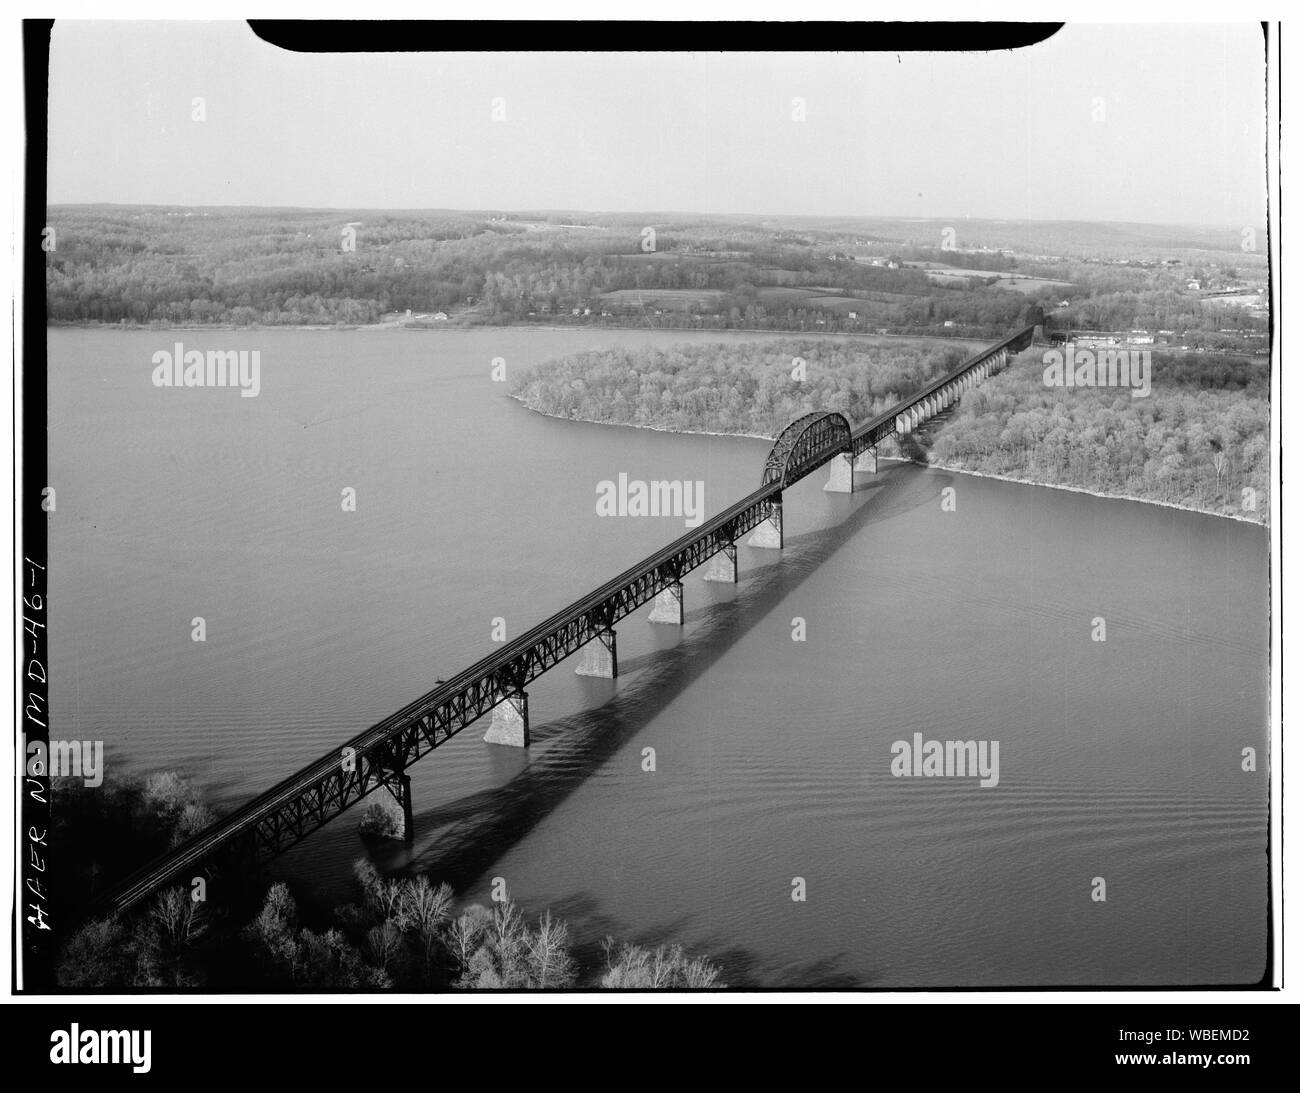 Vista generale del ponte DA SUD-OVEST - fiume Susquehanna bridge spanning fiume Susquehanna, Havre De Grace, Harford County, MD; American Bridge Company Foto Stock